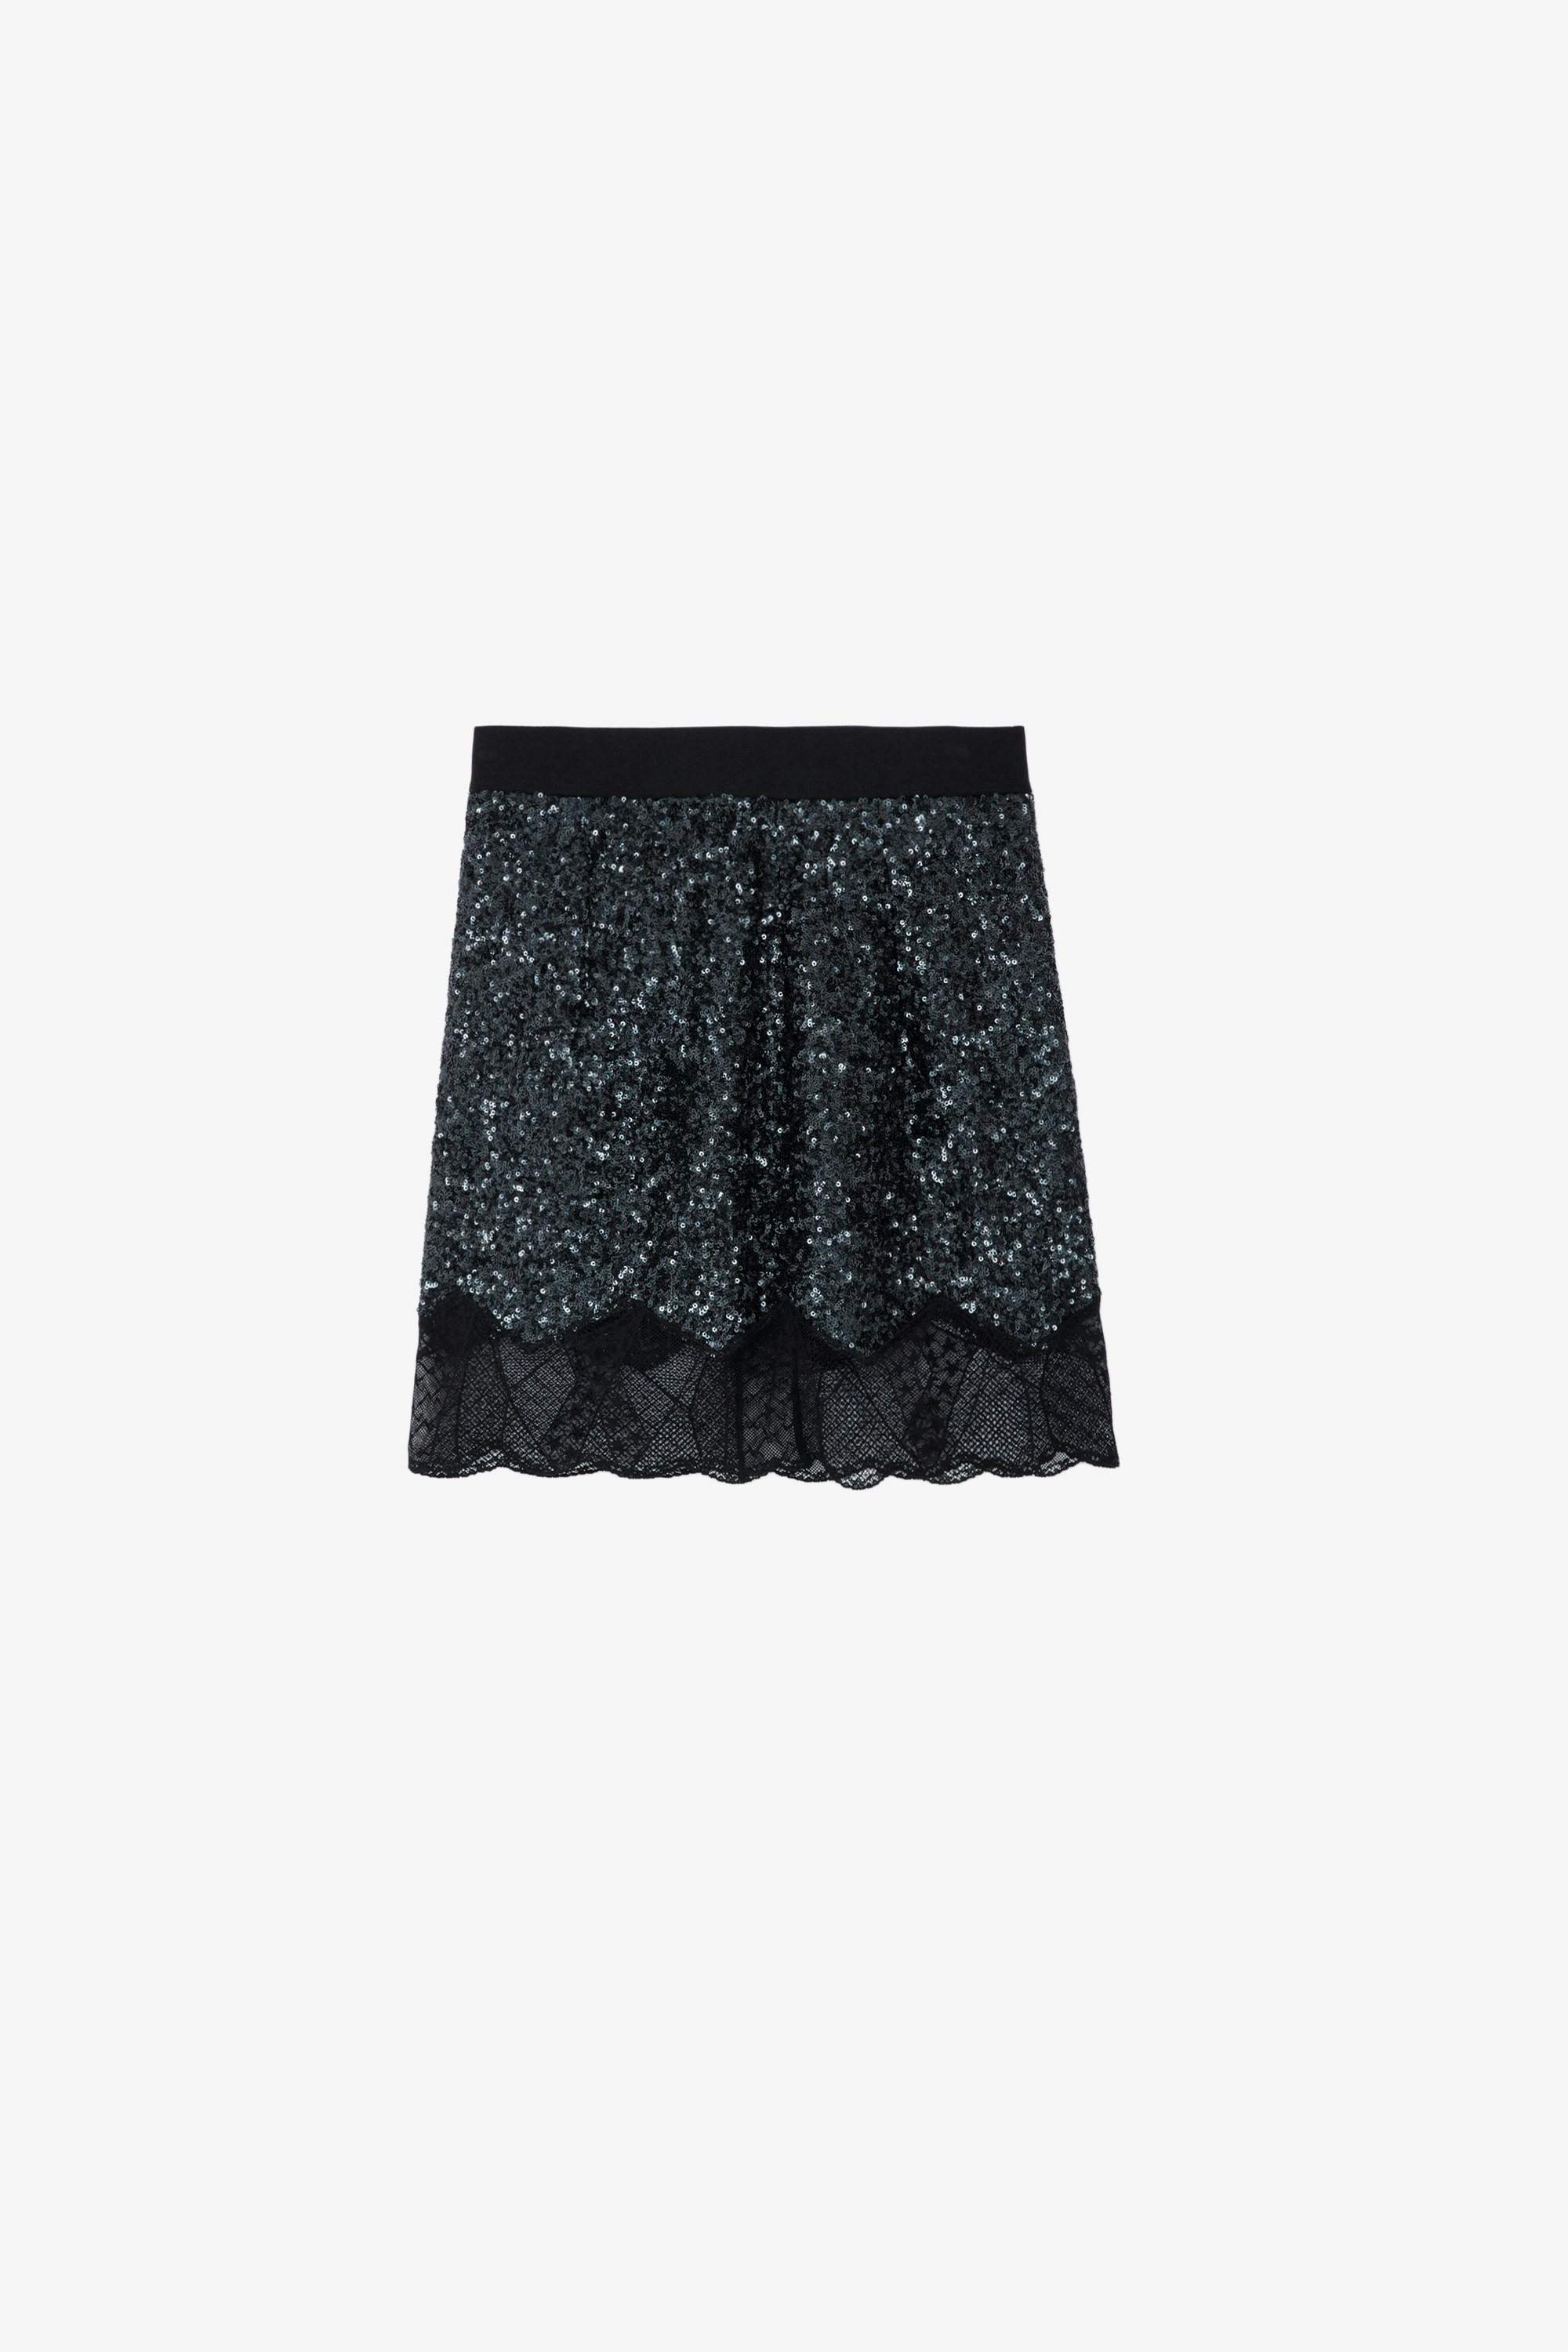 Falda de Lentejuelas Justicias - Falda negra corta con cinturilla elástica, lentejuelas y bordes de encaje.